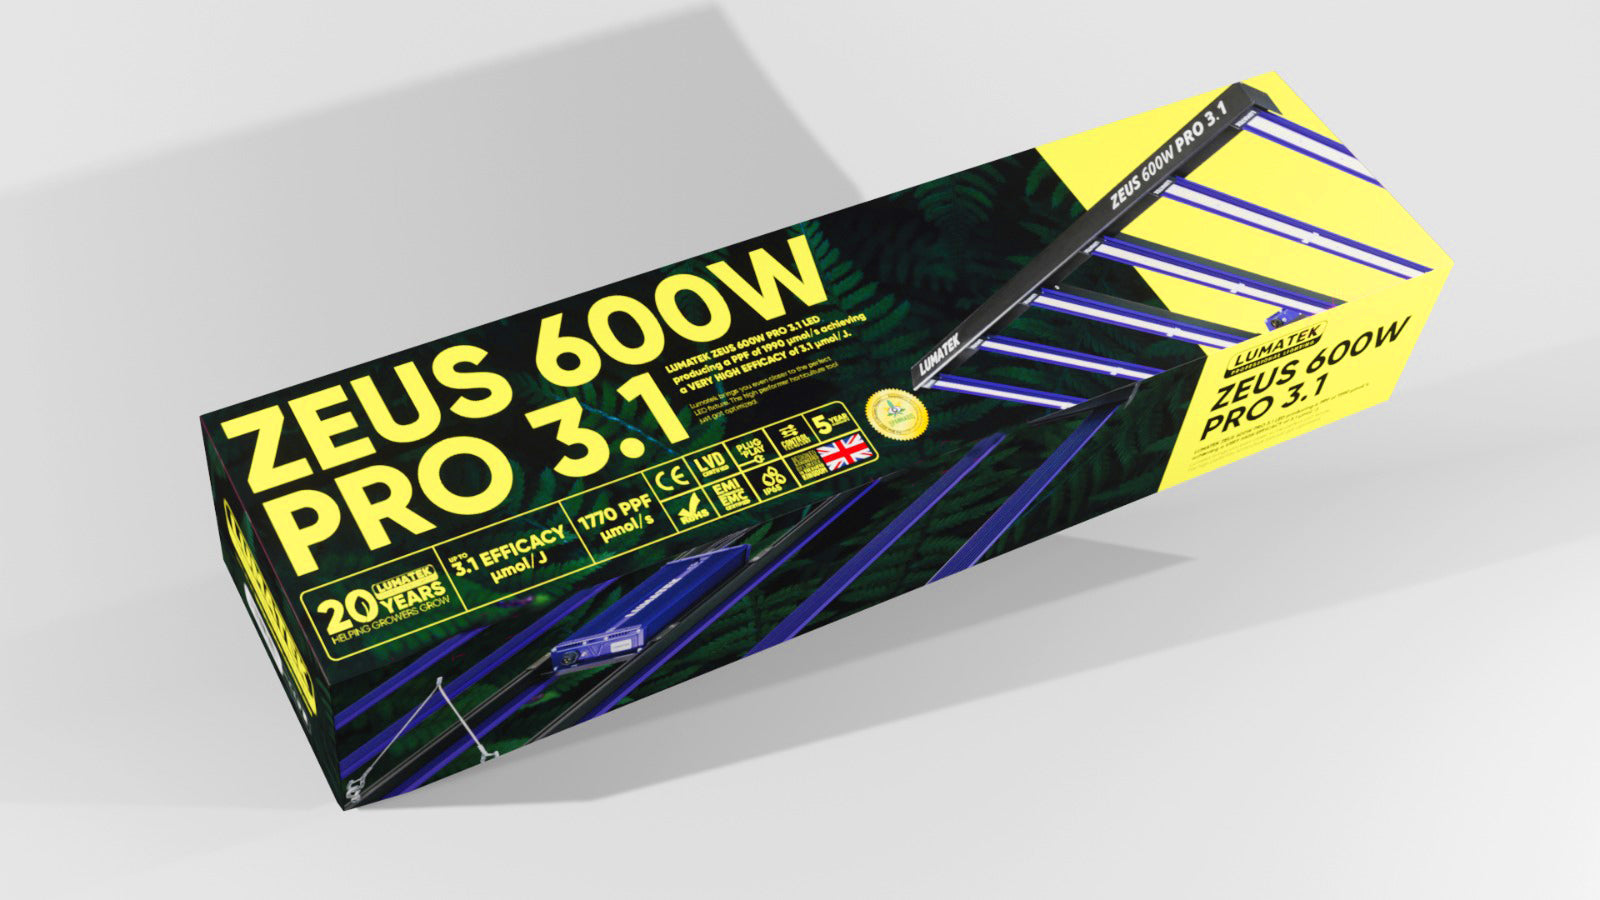 301 to 699w Lumatek Zeus Pro 600w LED Grow Light - 3.1umol